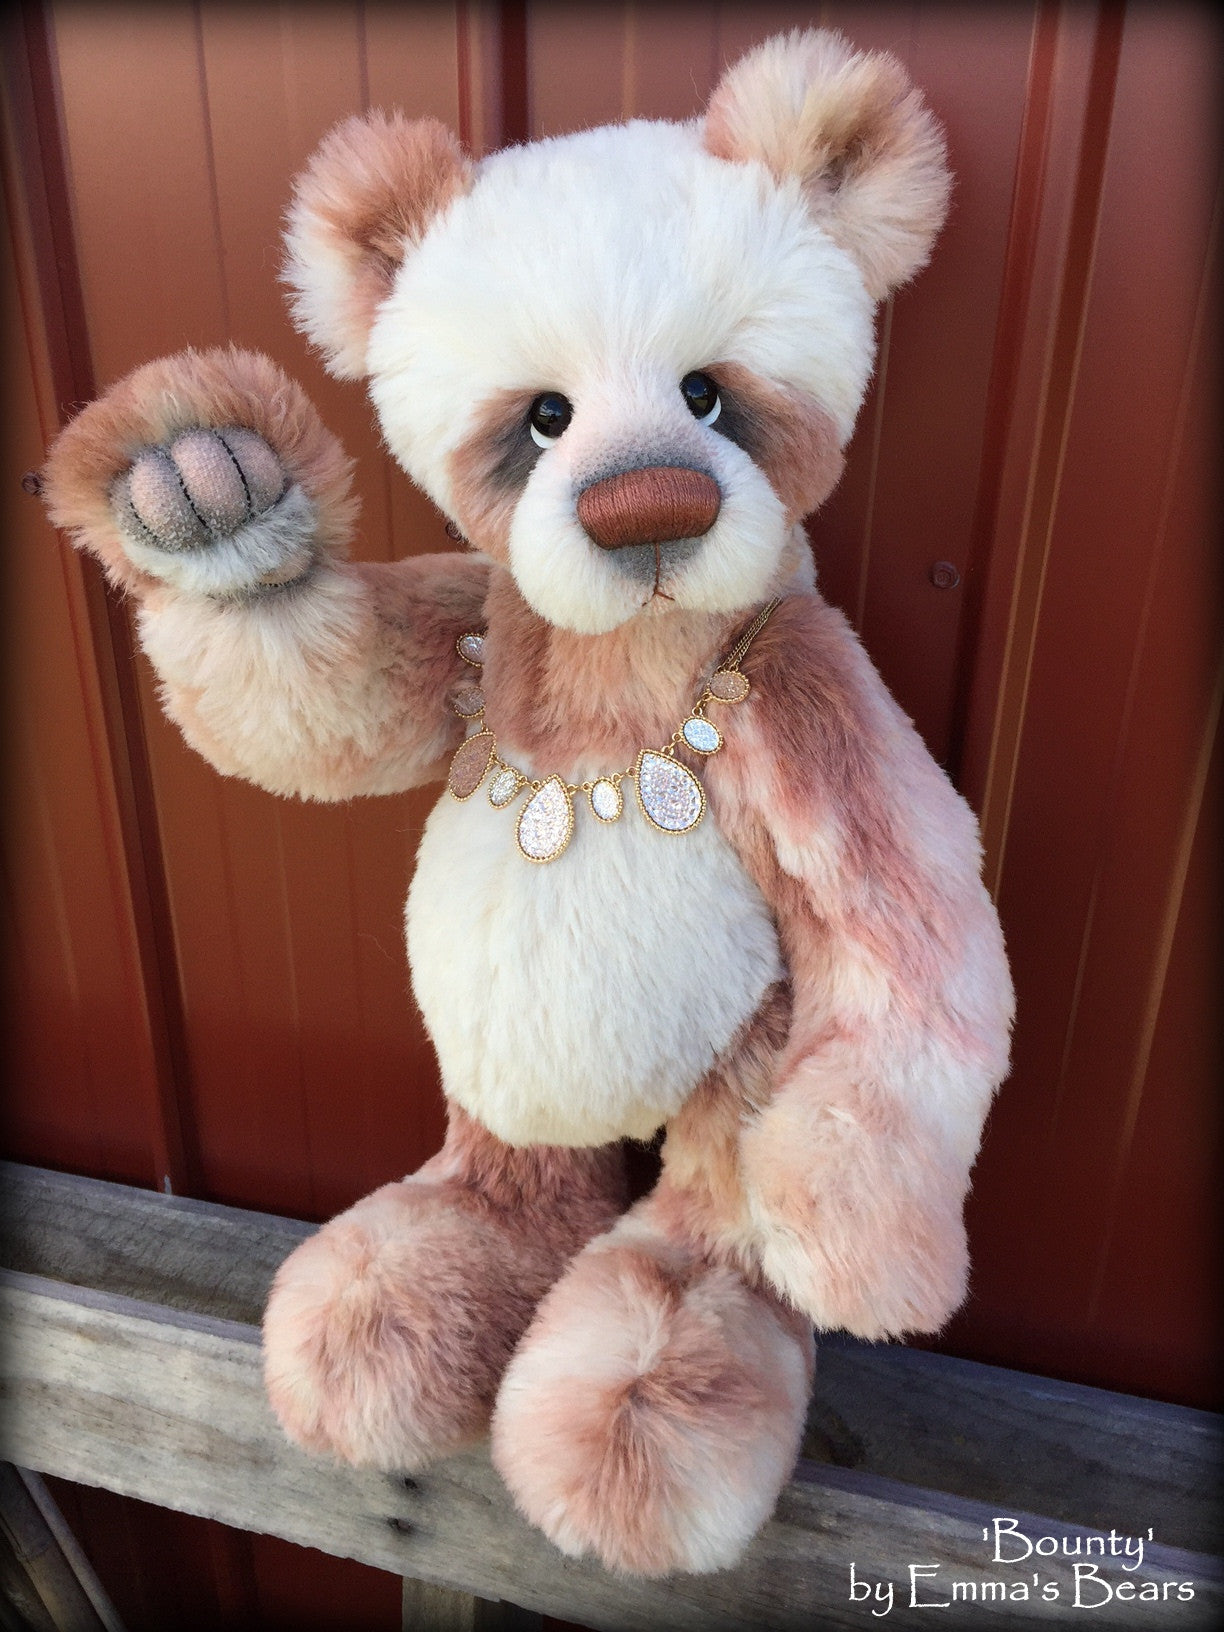 Bounty - 22" large hand-dyed ALPACA artist bear  - OOAK by Emma's Bears